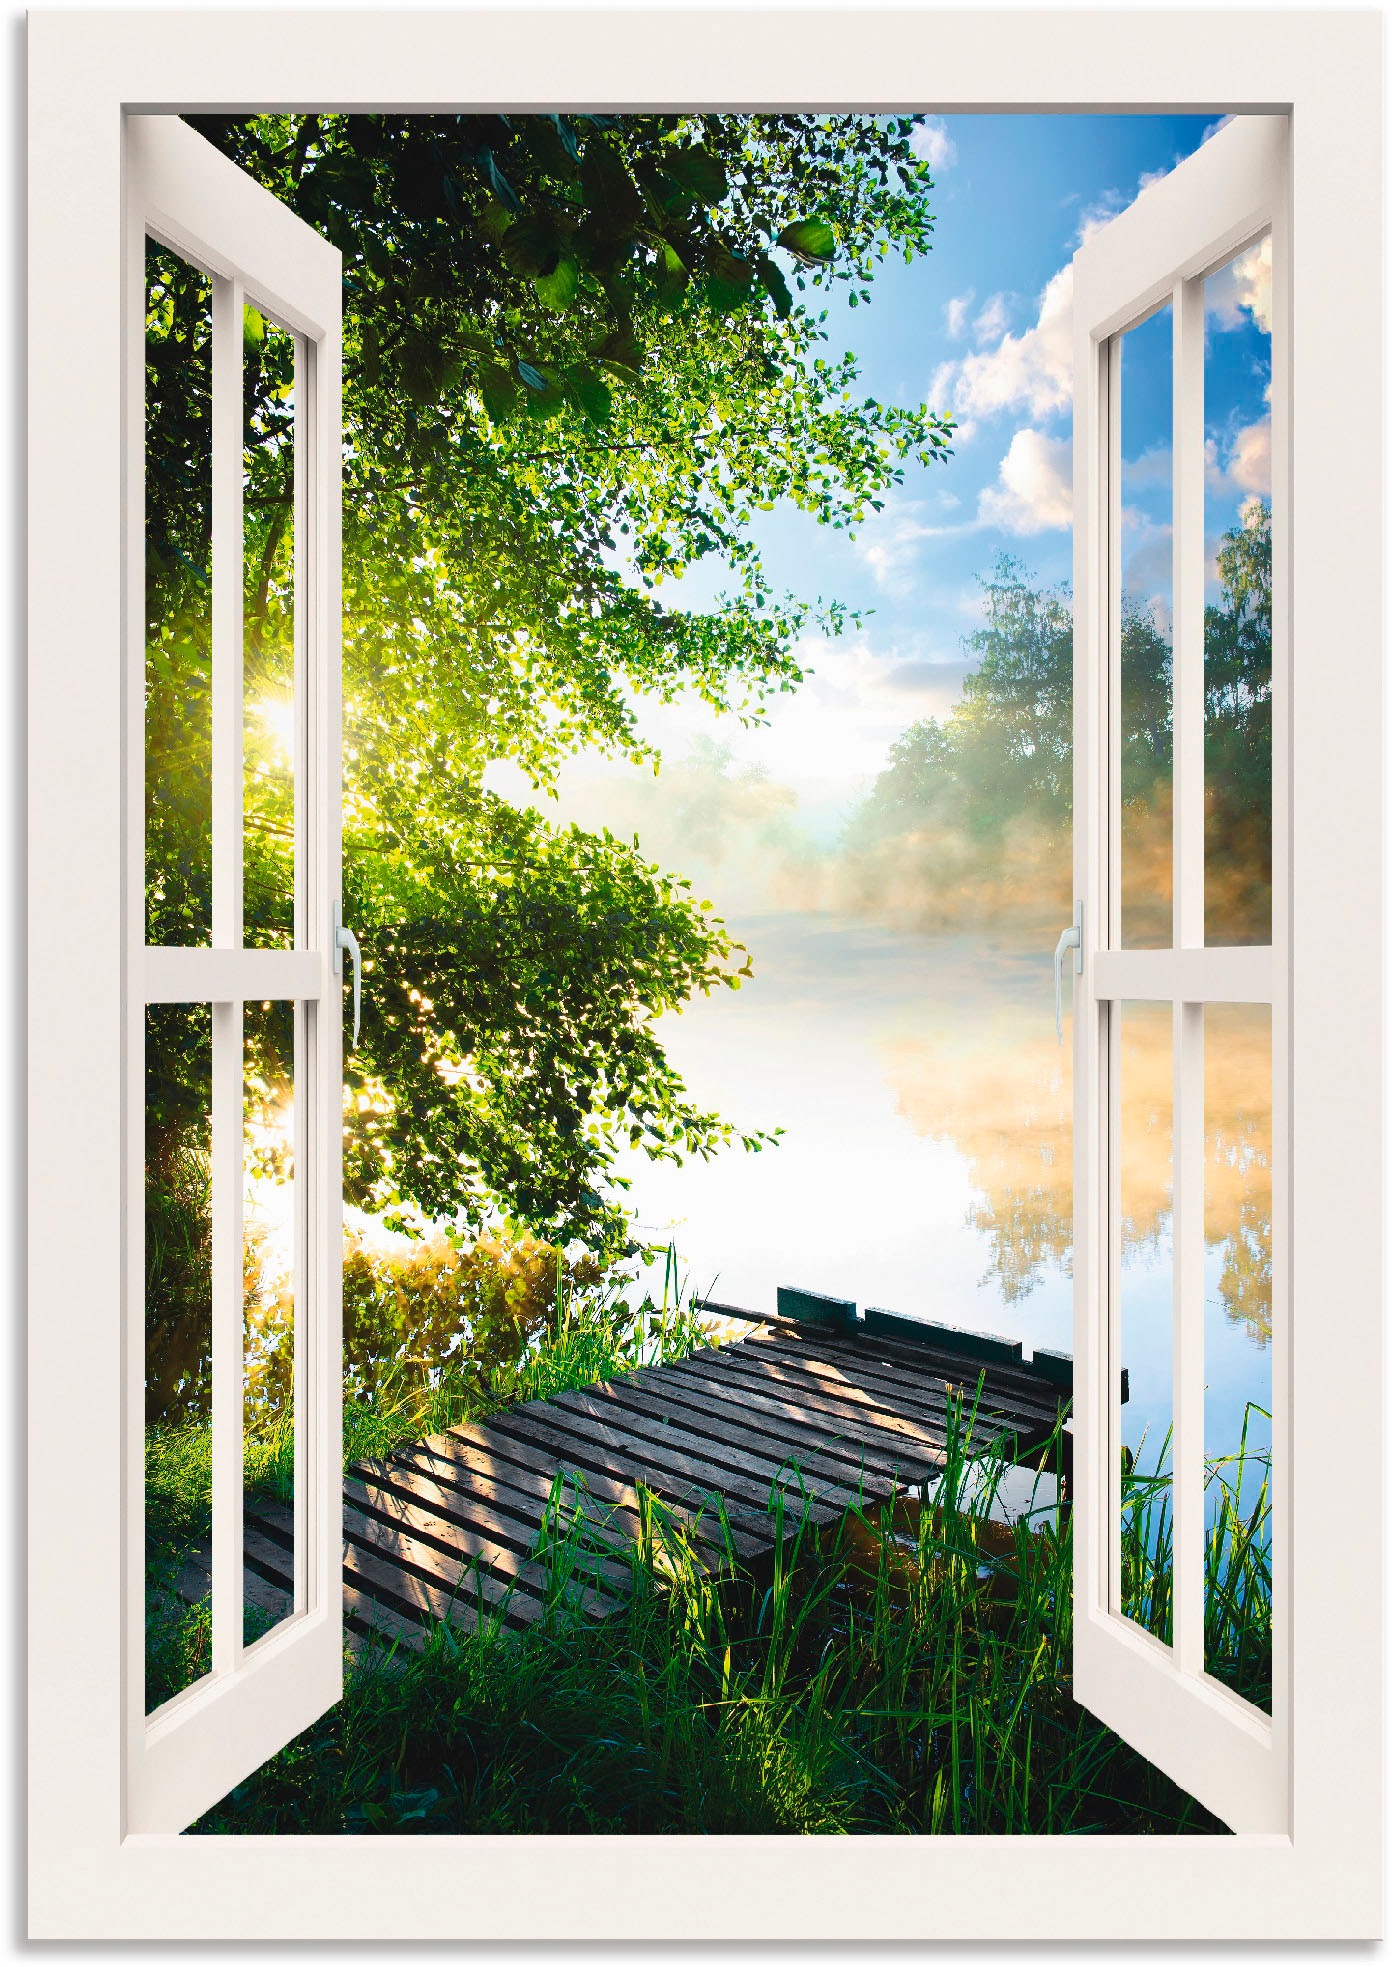 Artland Wandbild »Fensterblick Angelsteg am Fluss«, Fensterblick, (1 St.), als Alubild, Outdoorbild, Leinwandbild, Poster, Wandaufkleber